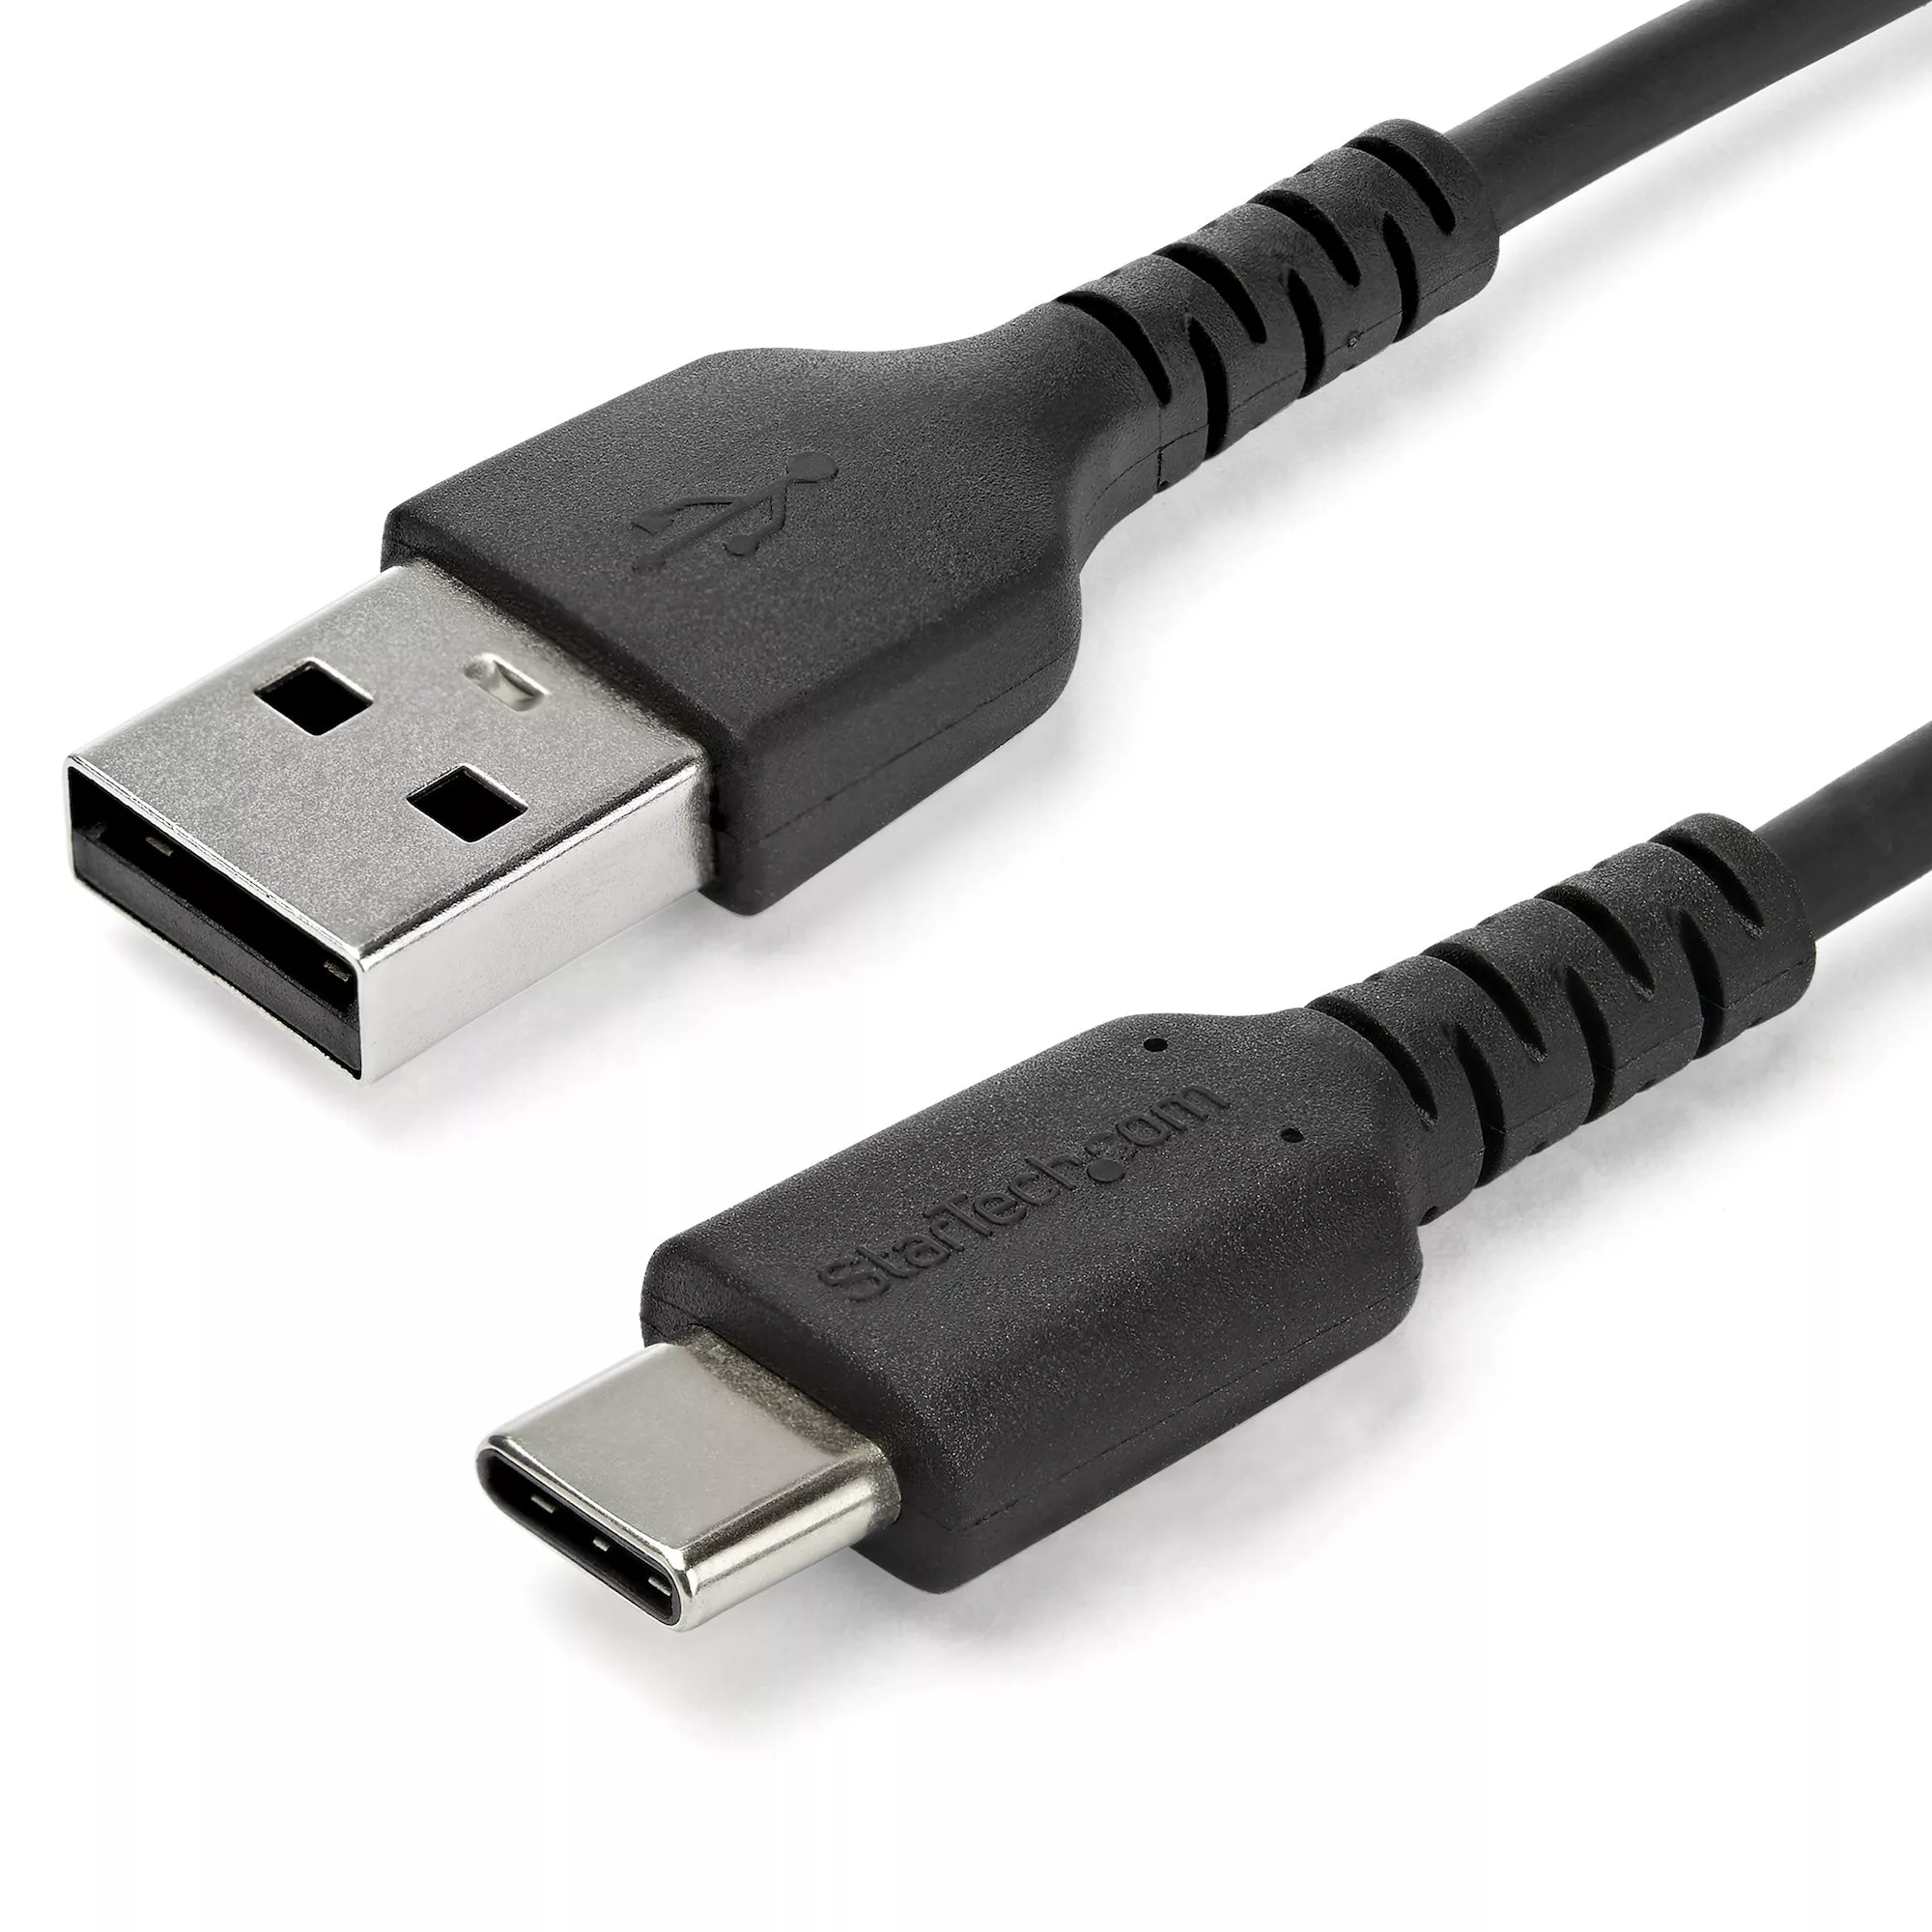 Revendeur officiel StarTech.com Câble USB-C vers USB 2.0 de 1 m - Noir